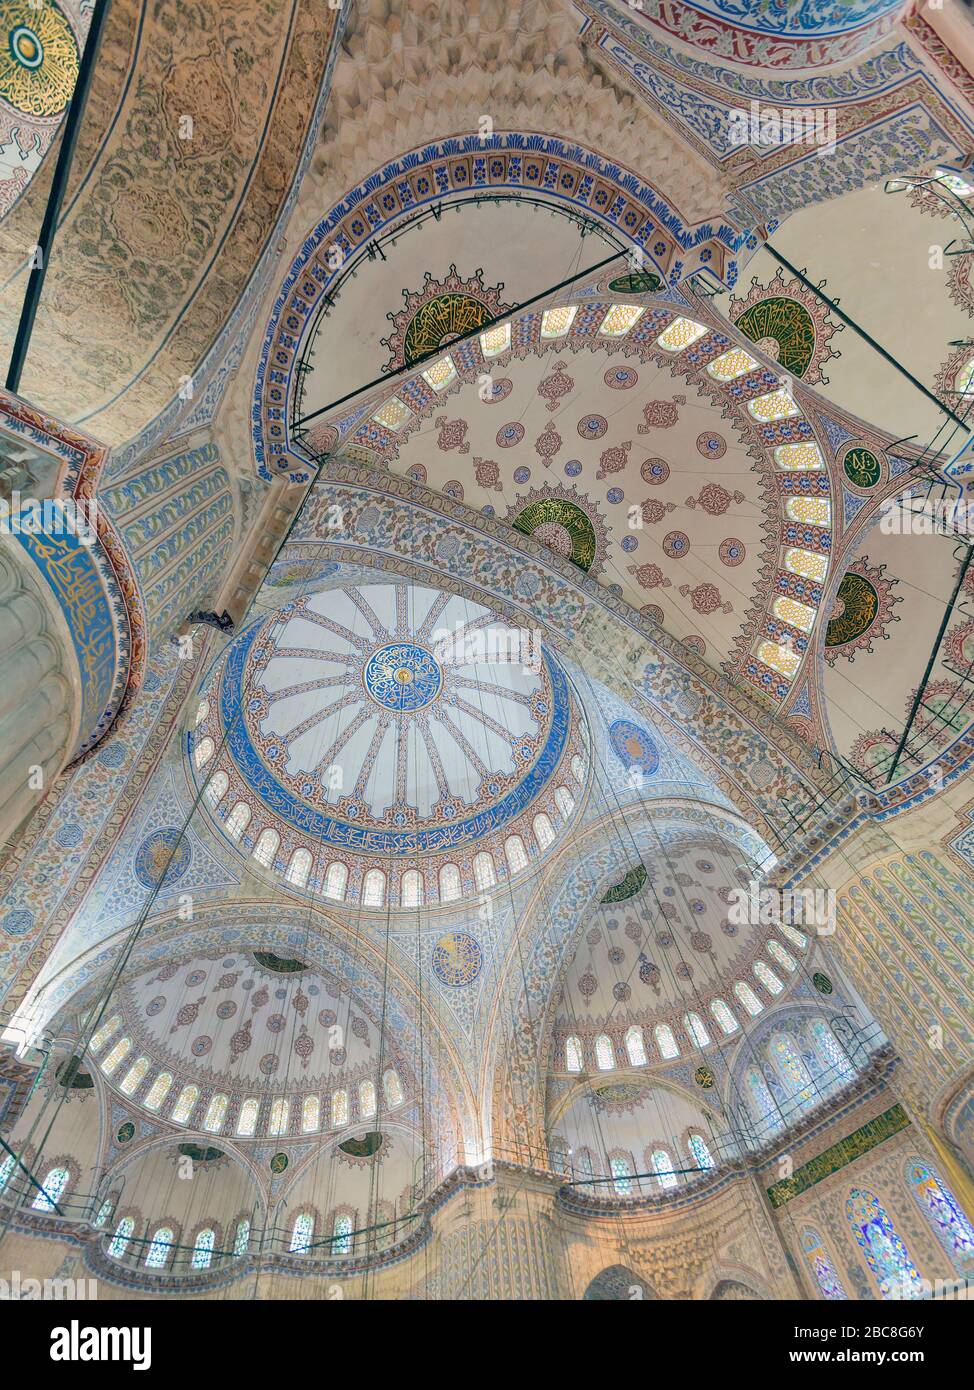 Estambul, Provincia de Estambul, Turquía. Interior de la Mezquita del Sultán Ahmet o Sultanahmet, también conocida como la Mezquita Azul. Techos y cúpulas mostrando I Foto de stock